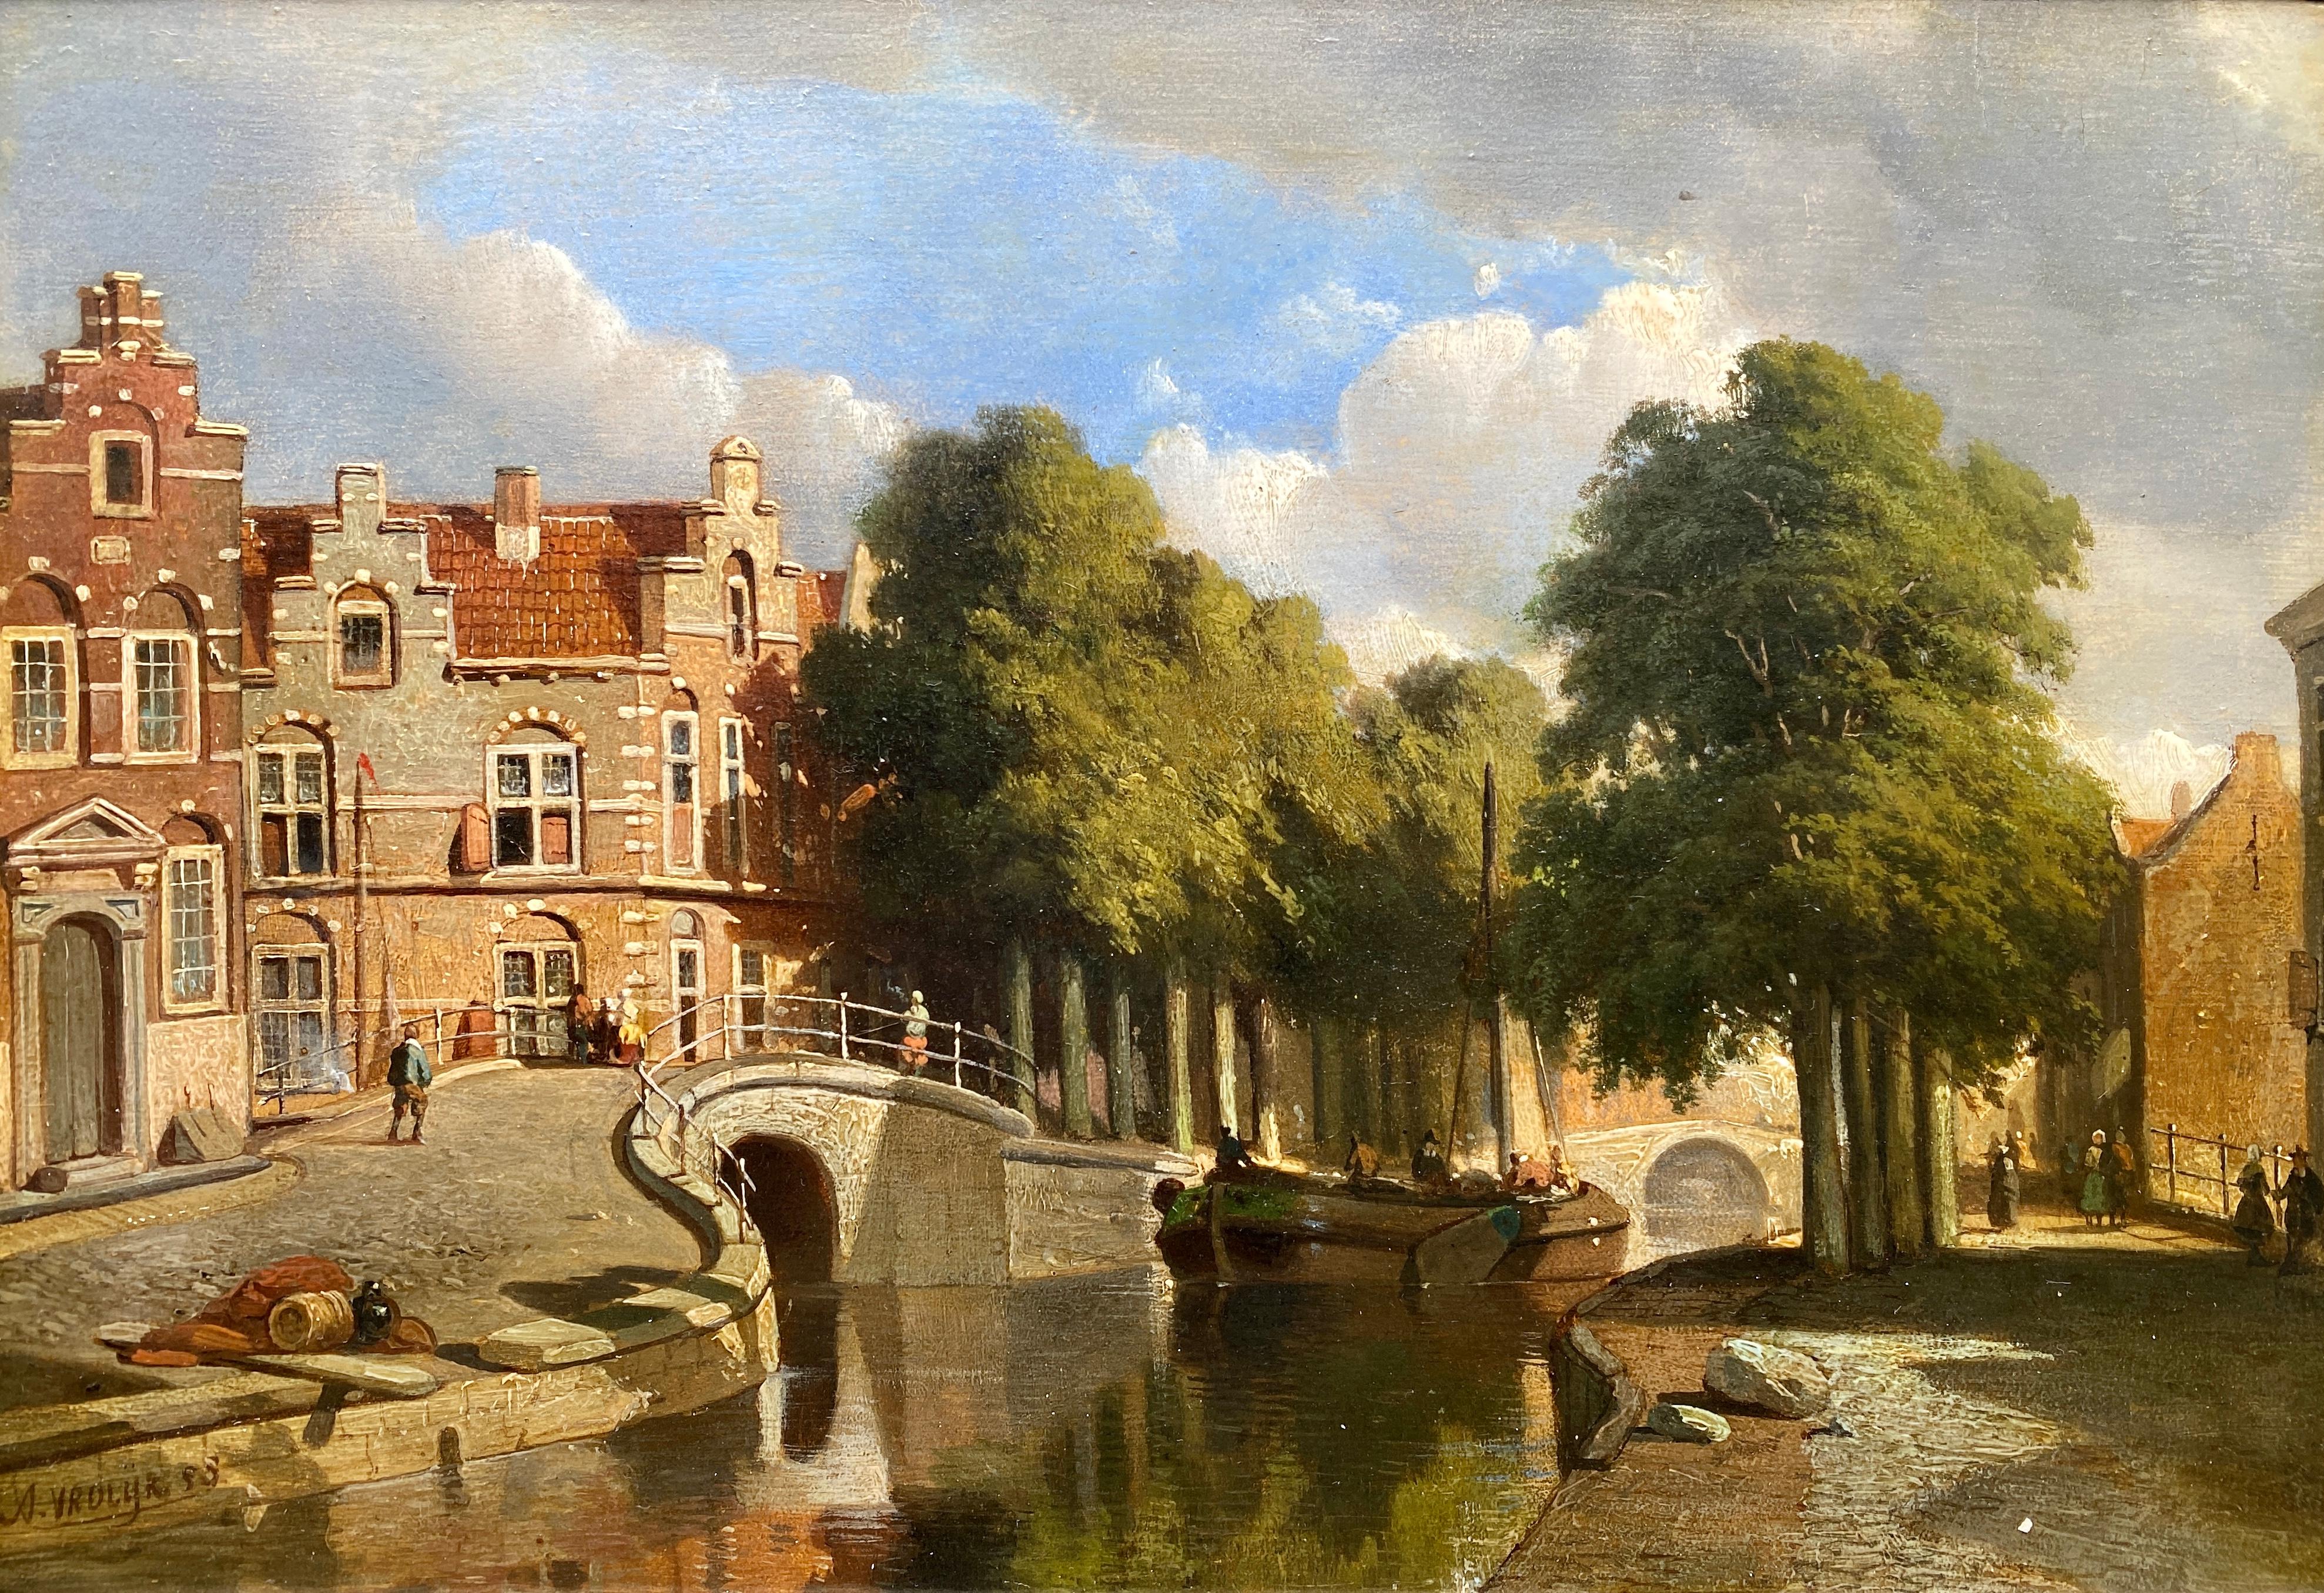 A Dutch Town View, Vrolijk Jacobus Adrianus, The Hague 1834 - 1862, Dutch Painter - Painting by Jacobus Adrianus Vrolijk